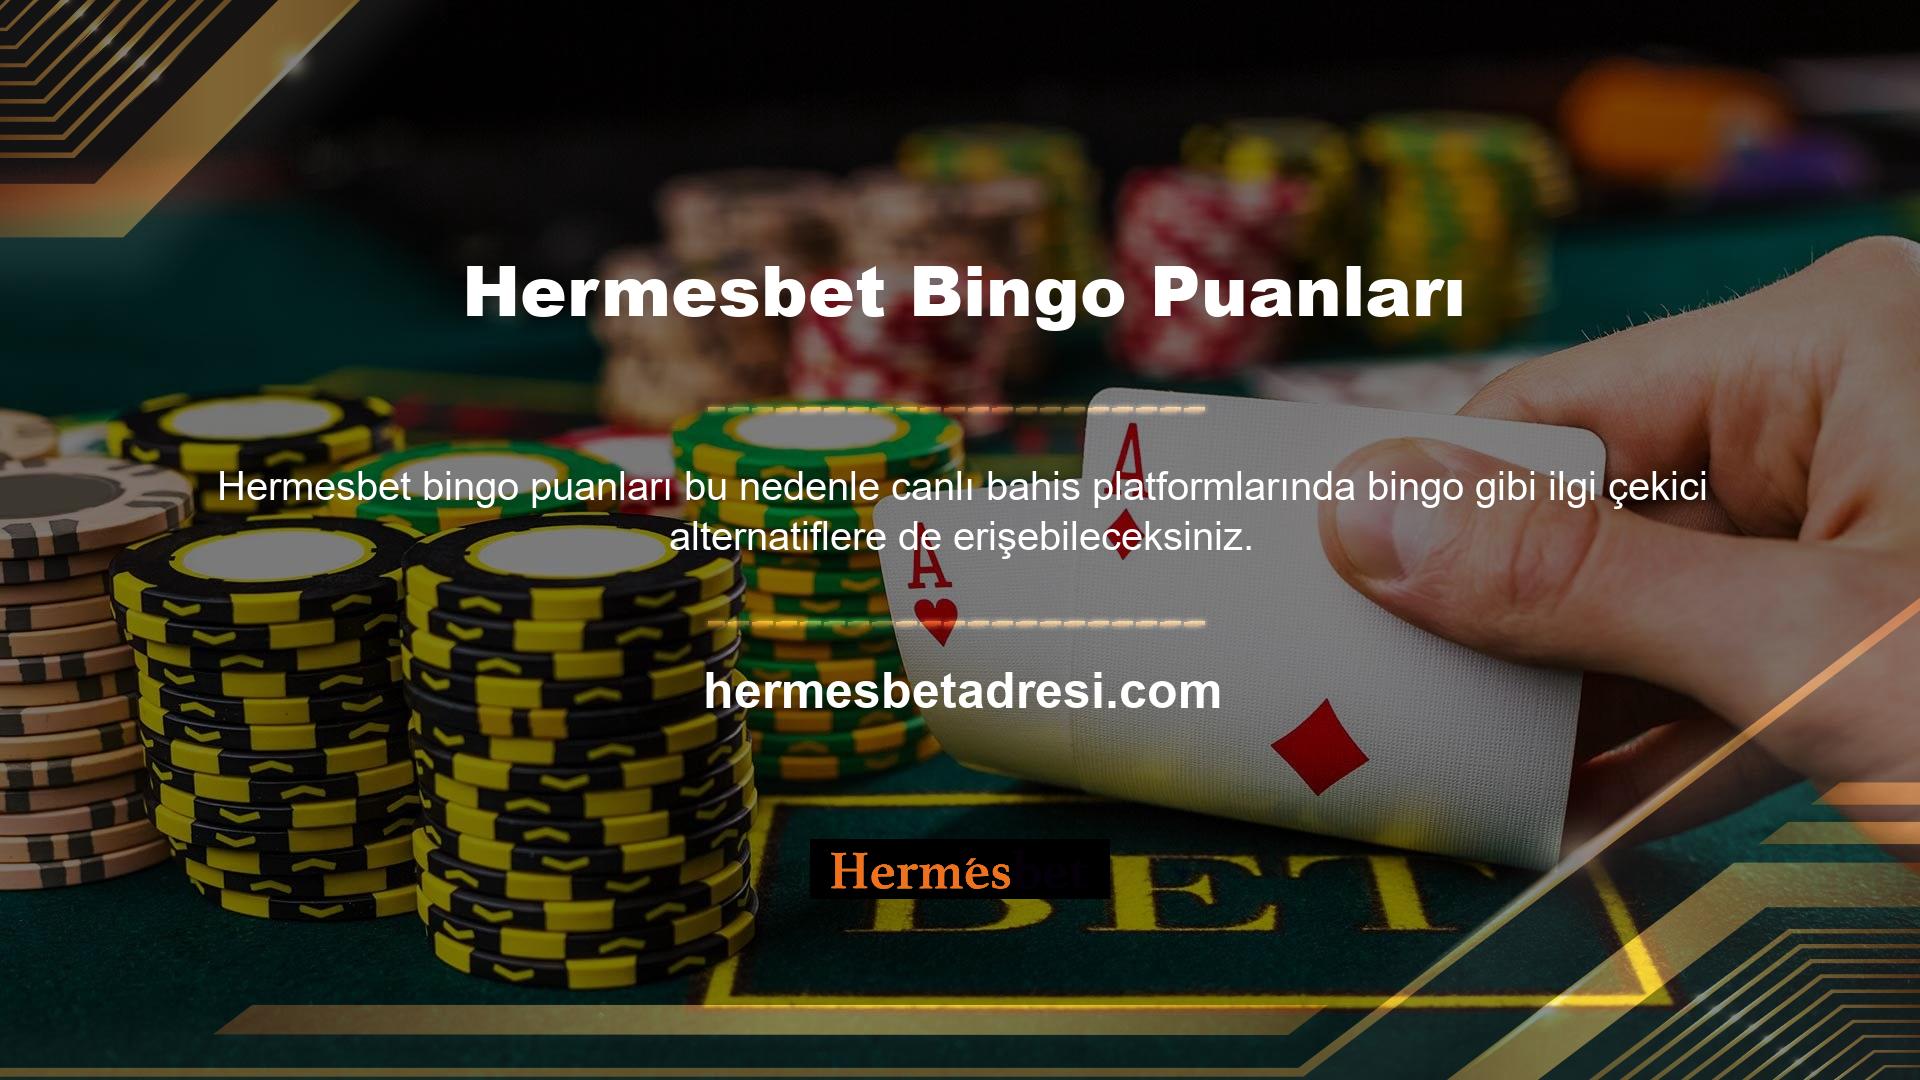 Öncelikle sitenin neyle ilgili olduğunu söyleyebilir misiniz? Hermesbet casino hizmetleri çok sayıda bahis seçeneği sunduğundan oyunu tanıtmaya öncelik vermeyi amaçlıyoruz